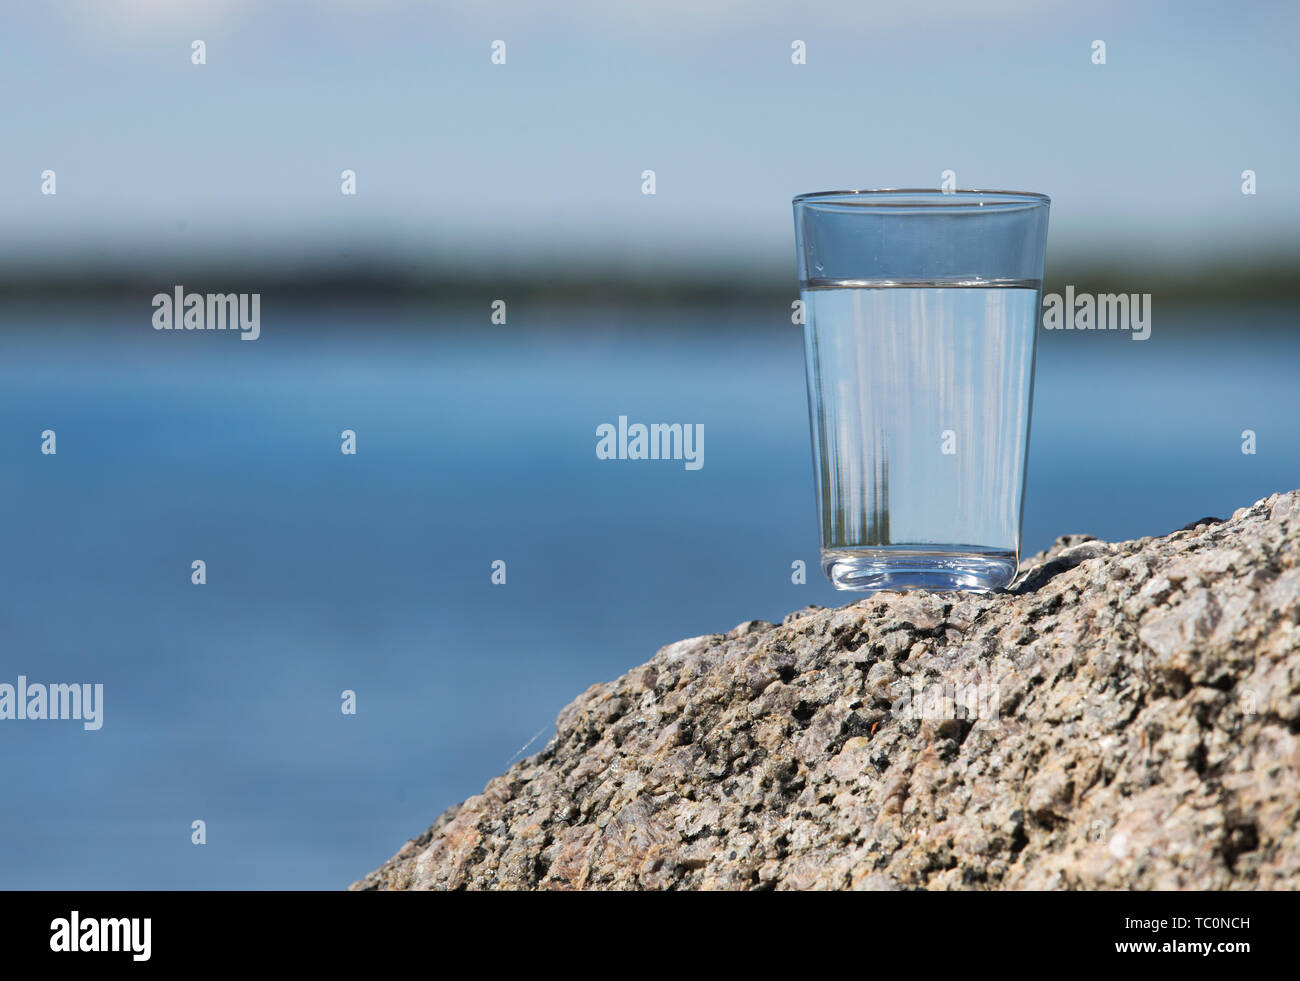 MOTALA 20170524 dricksglas Ett med dricksvatten från sjön Vättern. Un bicchiere con acqua potabile dal lago Vättern. Foto Jeppe Gustafsson Foto Stock